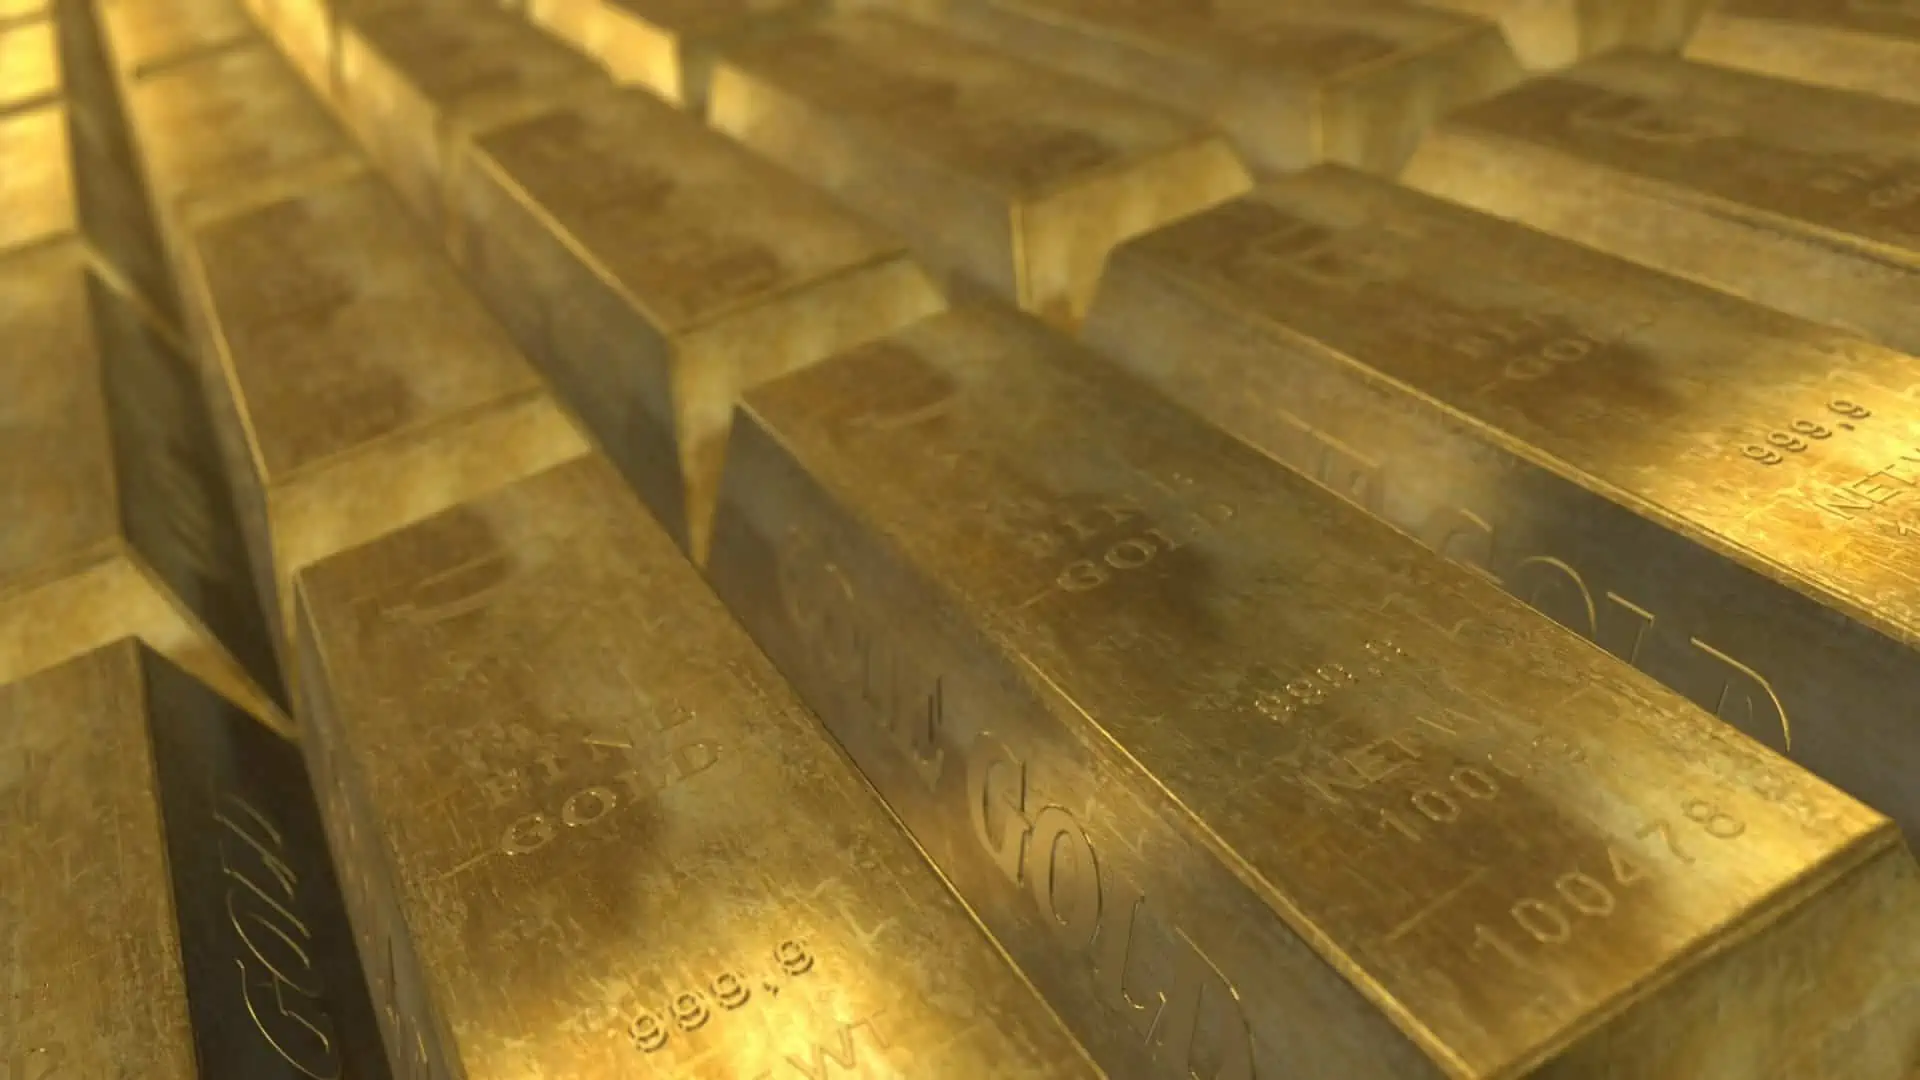 Prezzo oro al grammo a novembre 2020: valore e quotazione. I dati